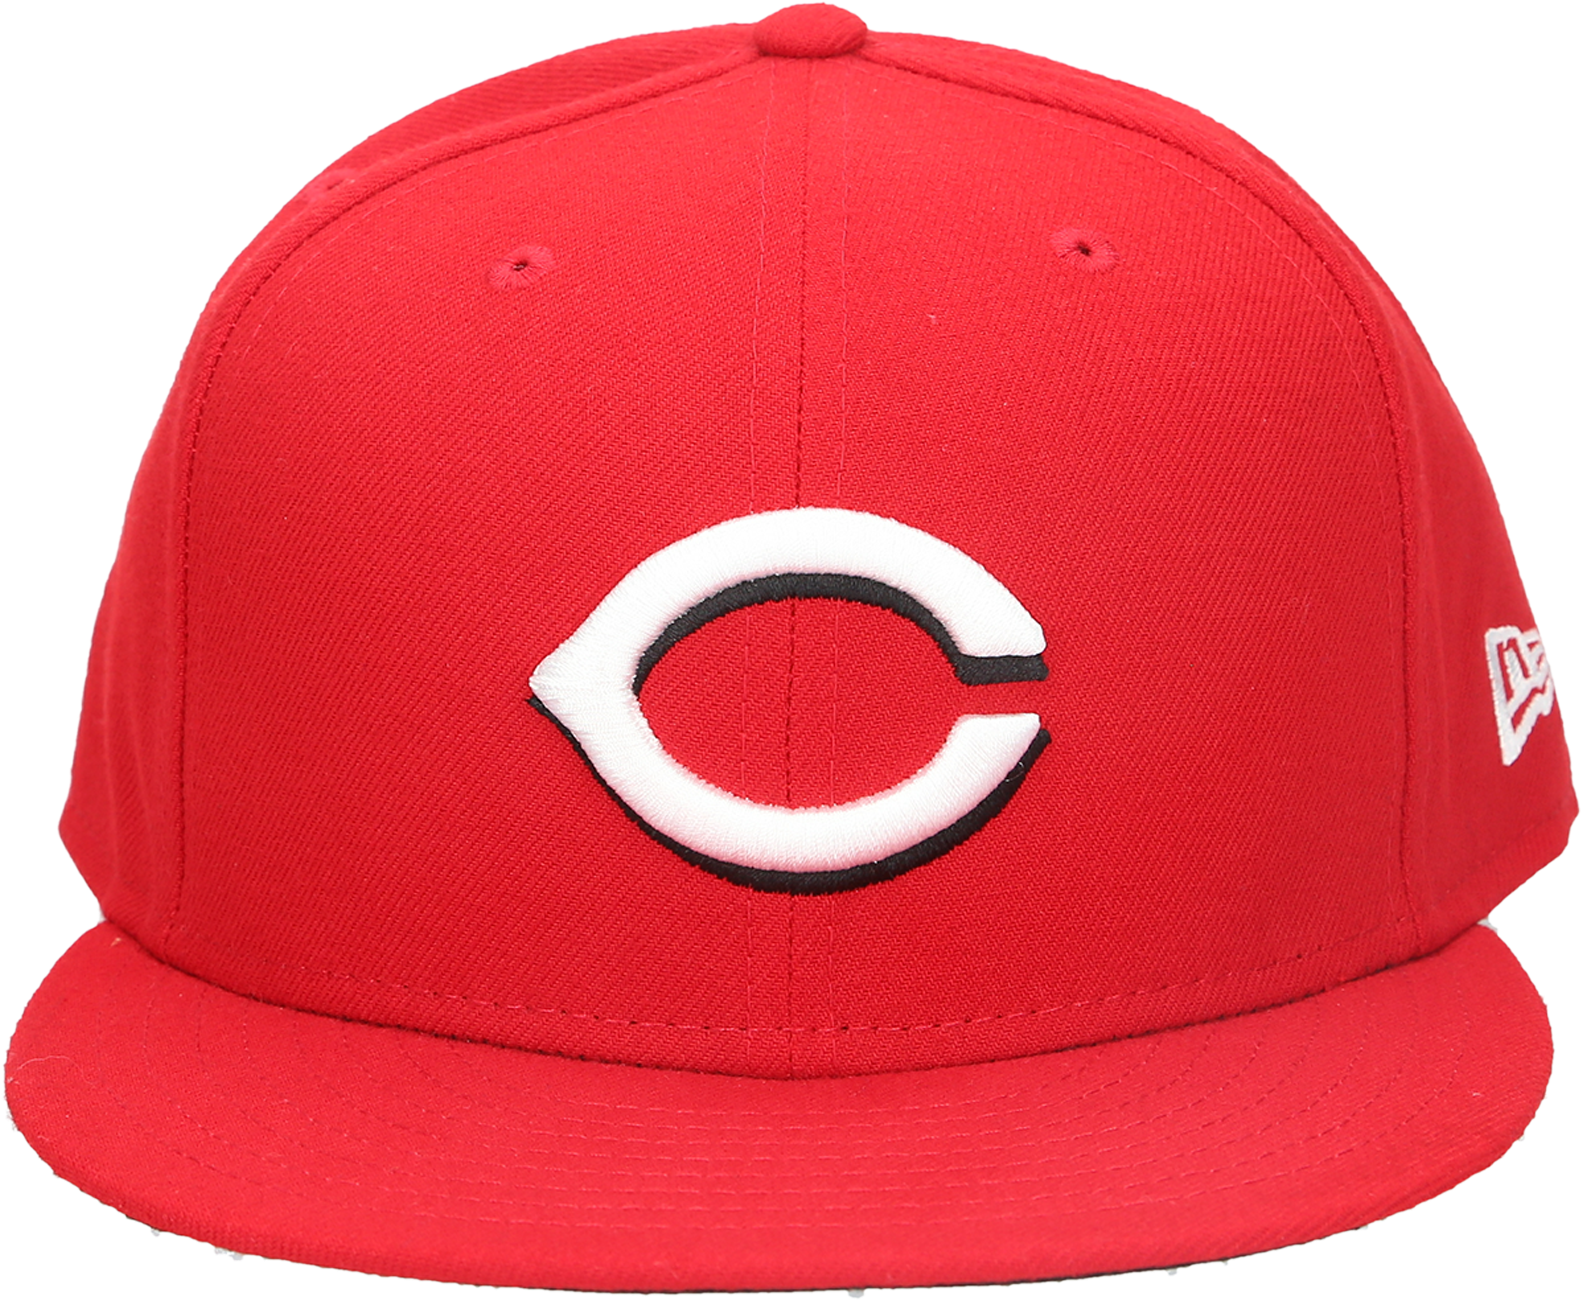 Cincinnati Reds Baseball Cap PNG